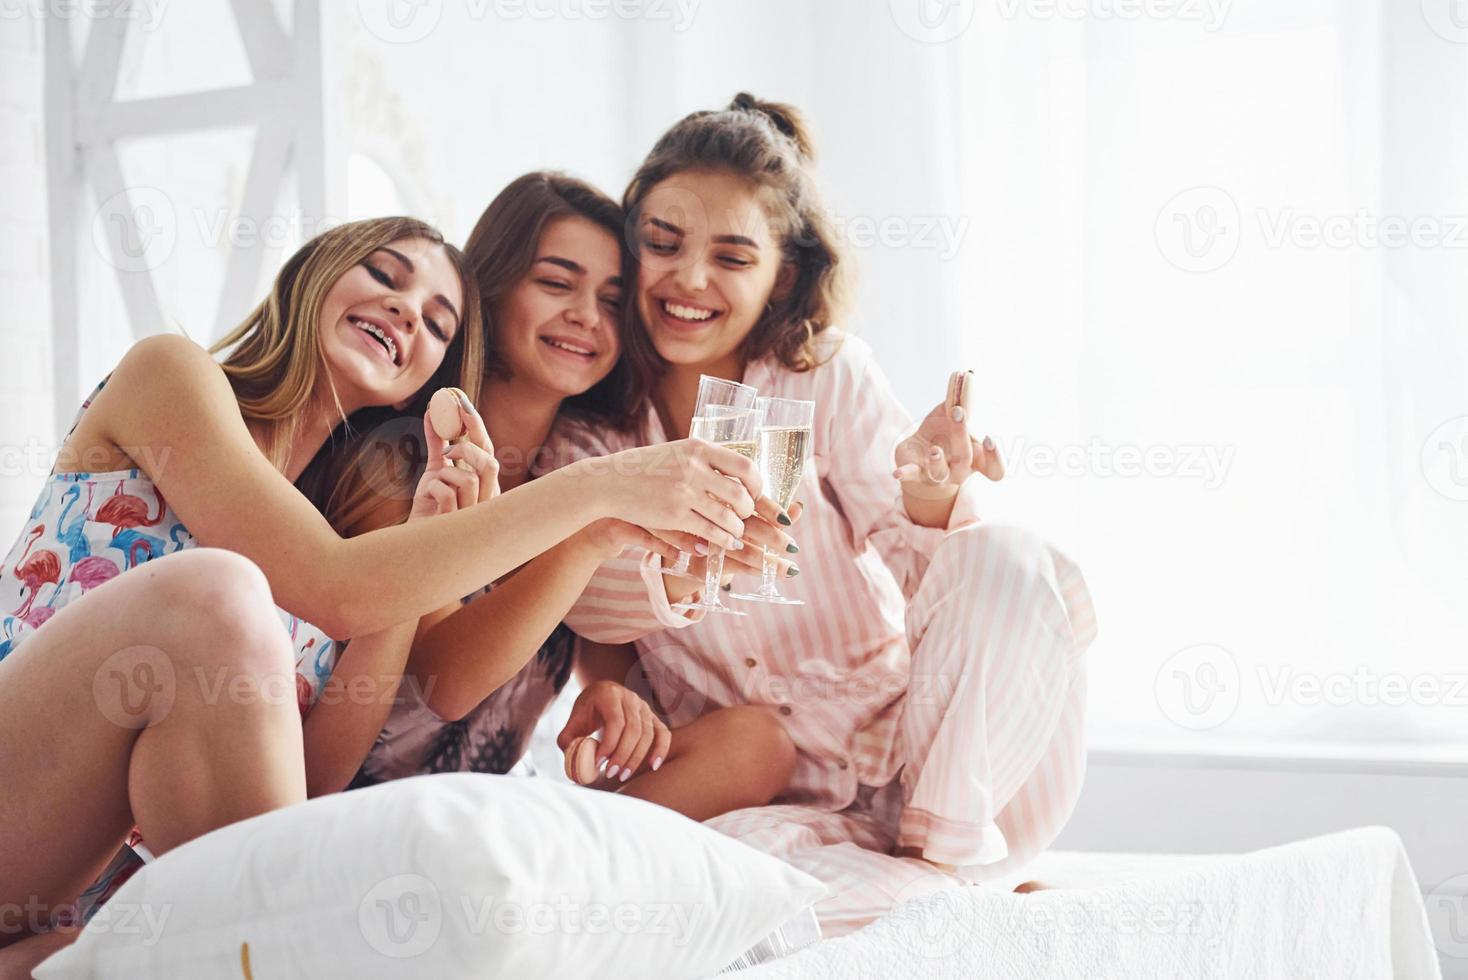 celebrando con vasos de alcohol en las manos. amigas felices pasando un buen rato en la fiesta de pijamas en el dormitorio foto